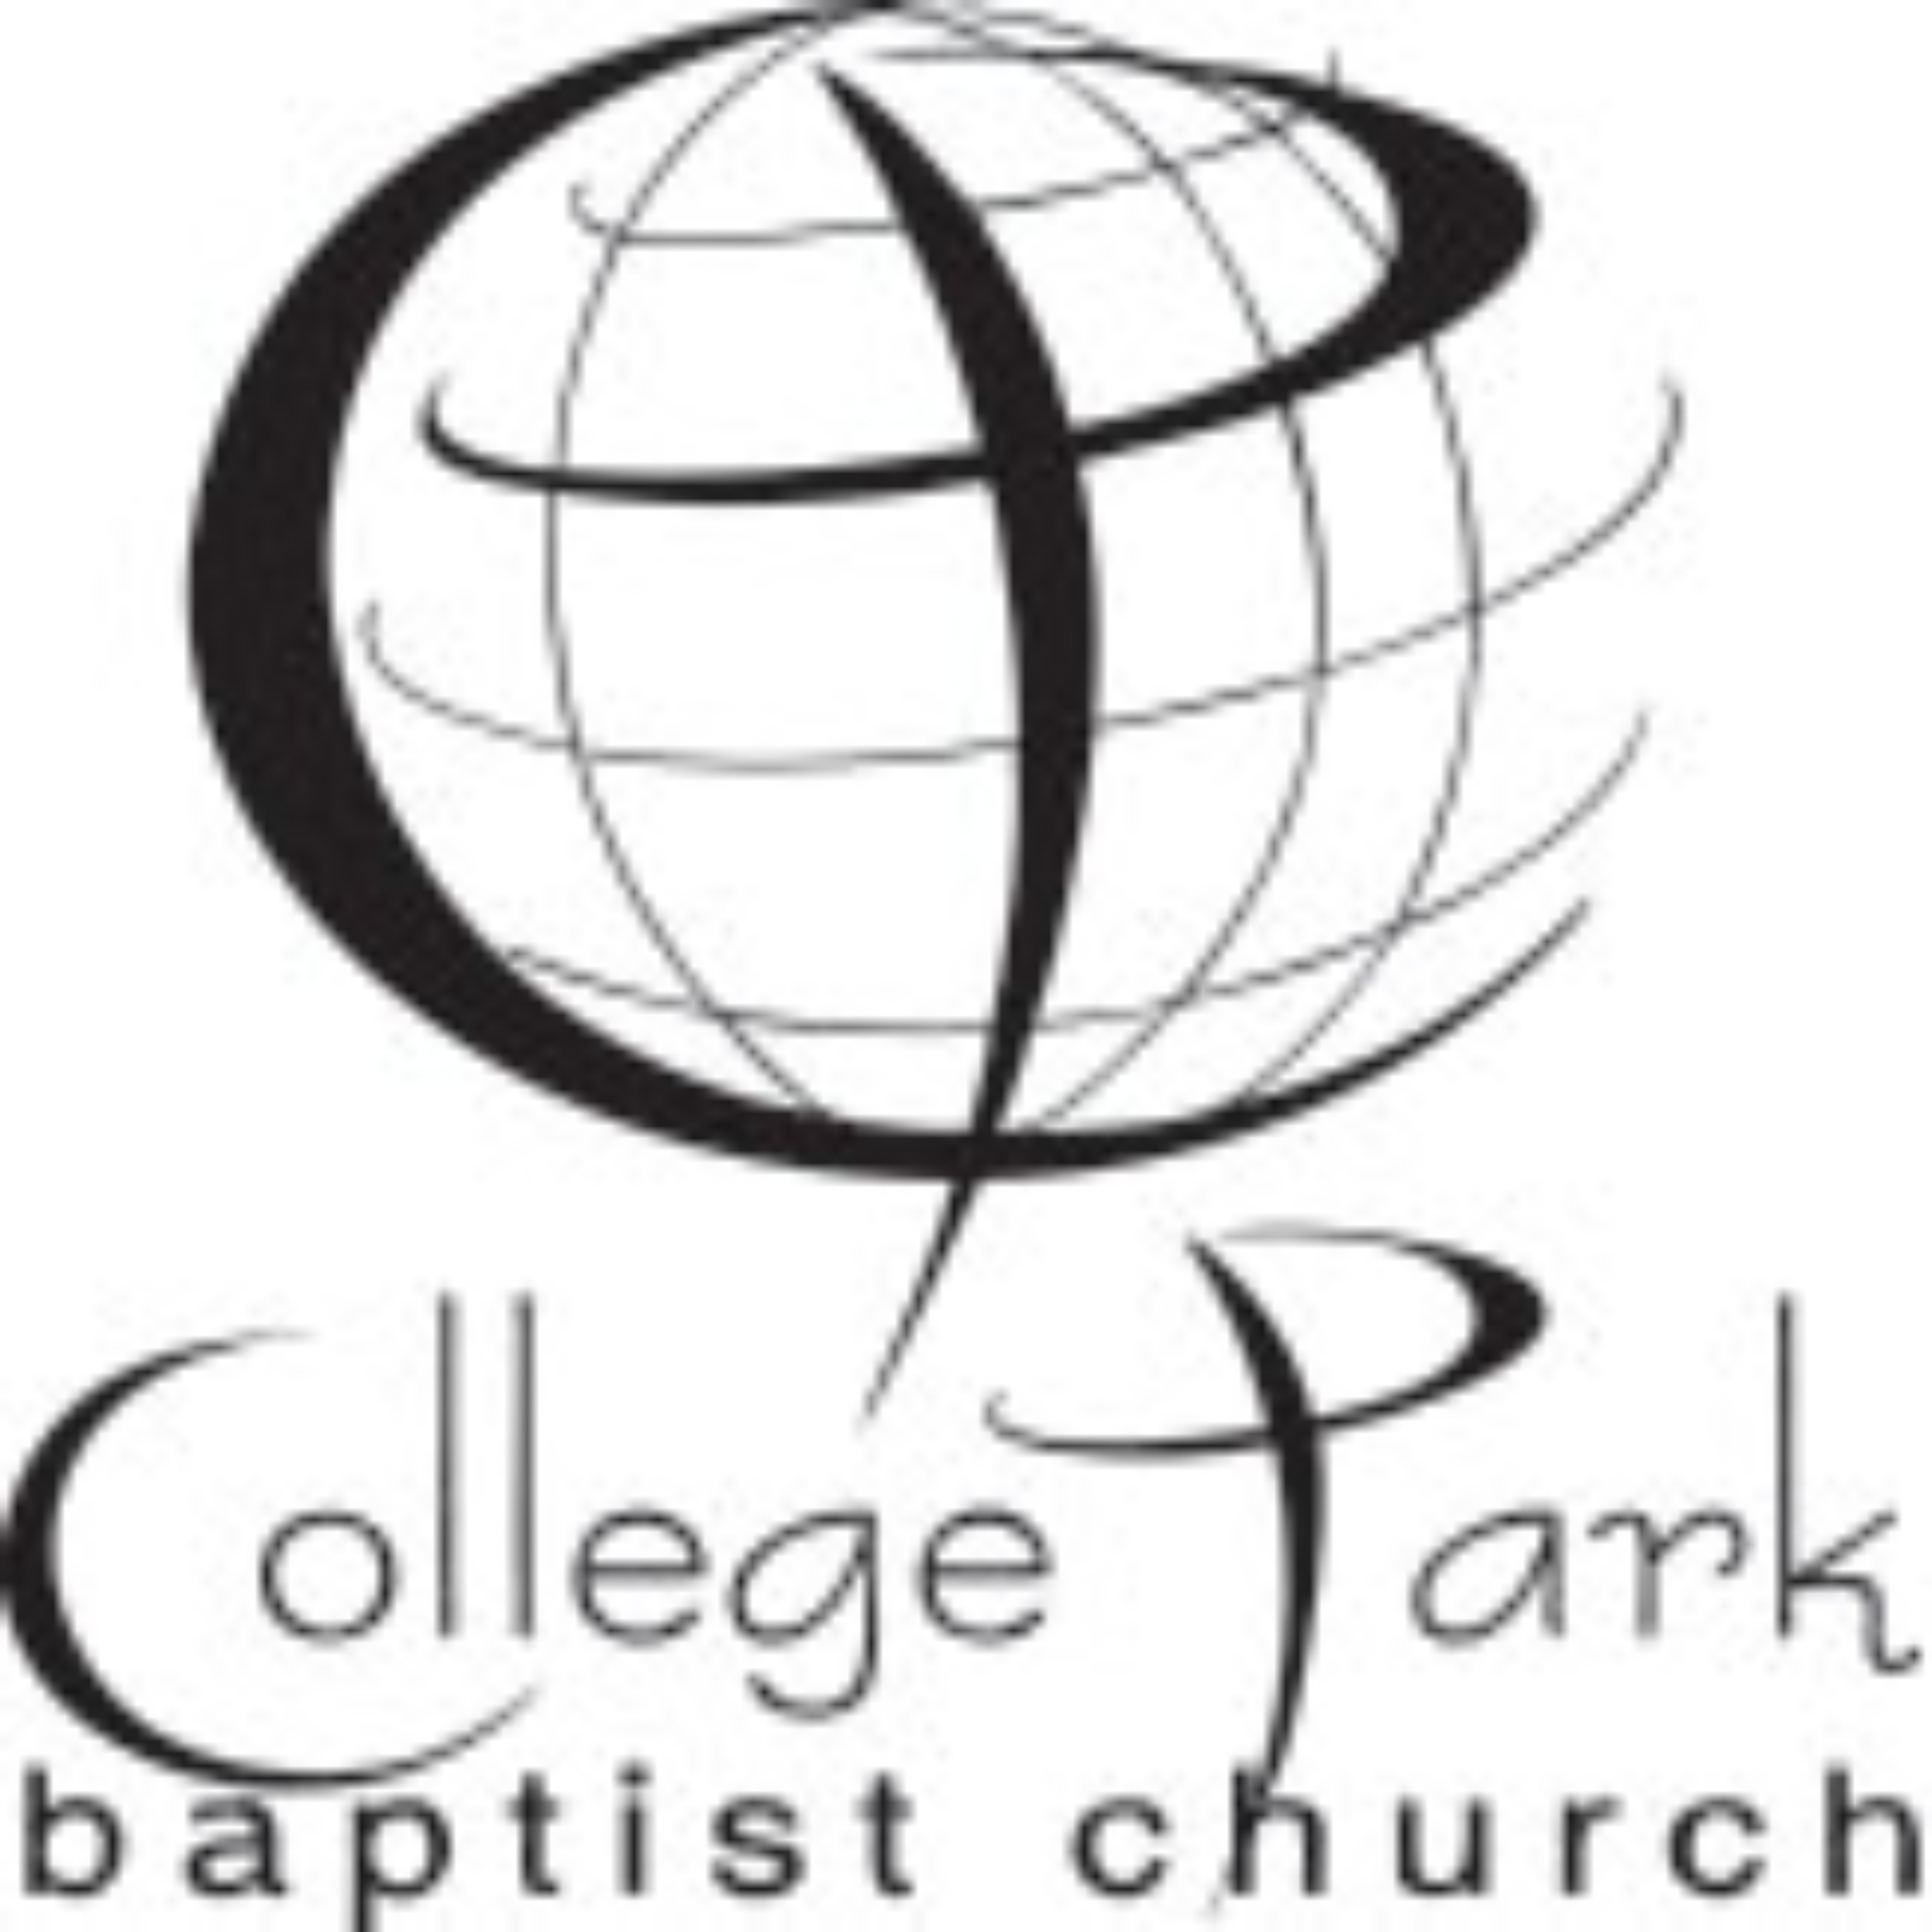 College Park Baptist Church, Cary, NC